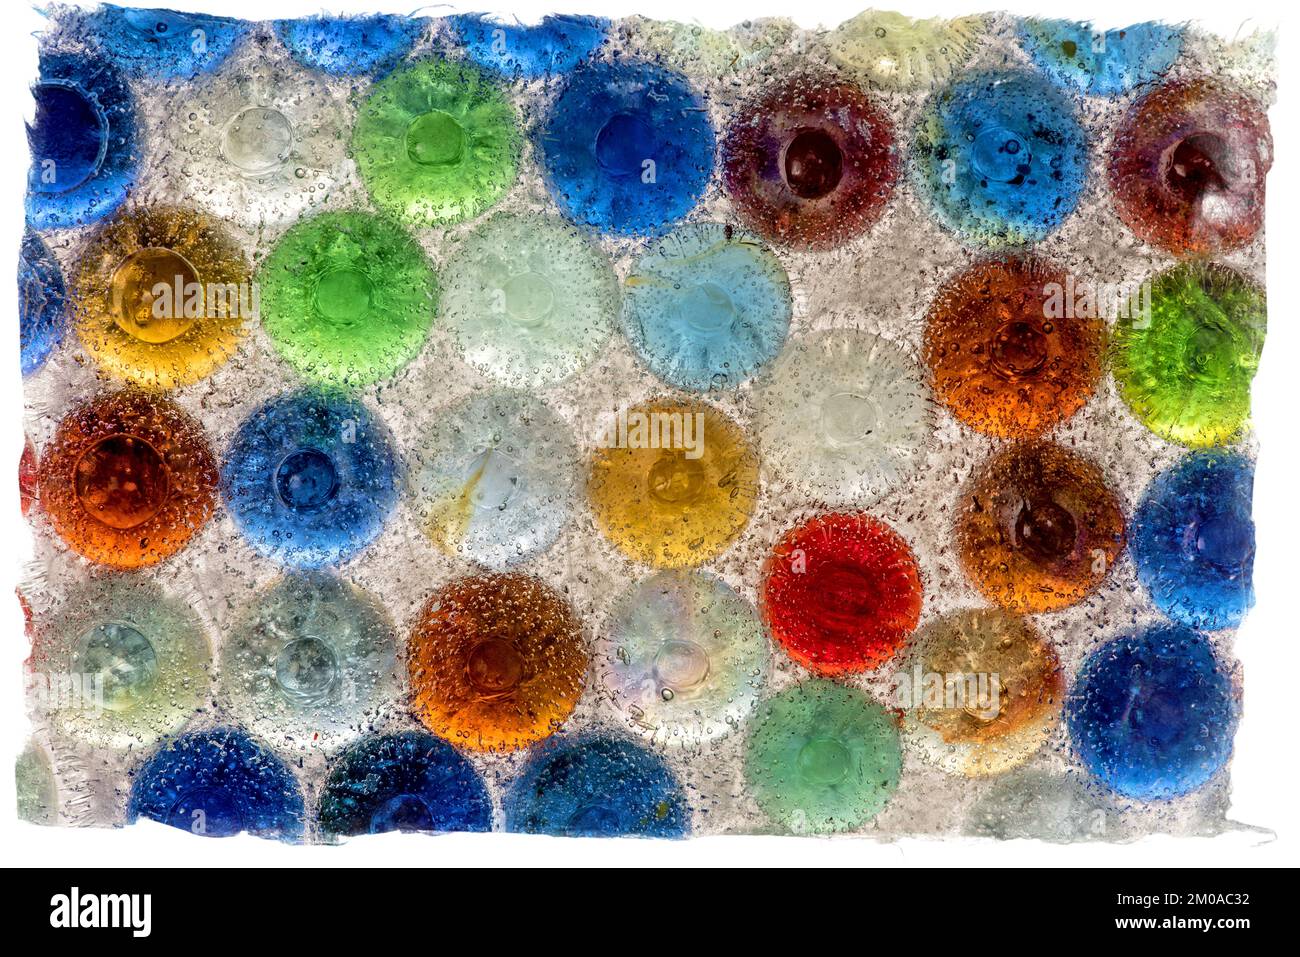 Un projet photo utilisant des billes rétroéclairées révèle à la fois la clarté du verre et les défauts de surface, ainsi que des couleurs vives et, dans ce cas, des bulles d'air Banque D'Images